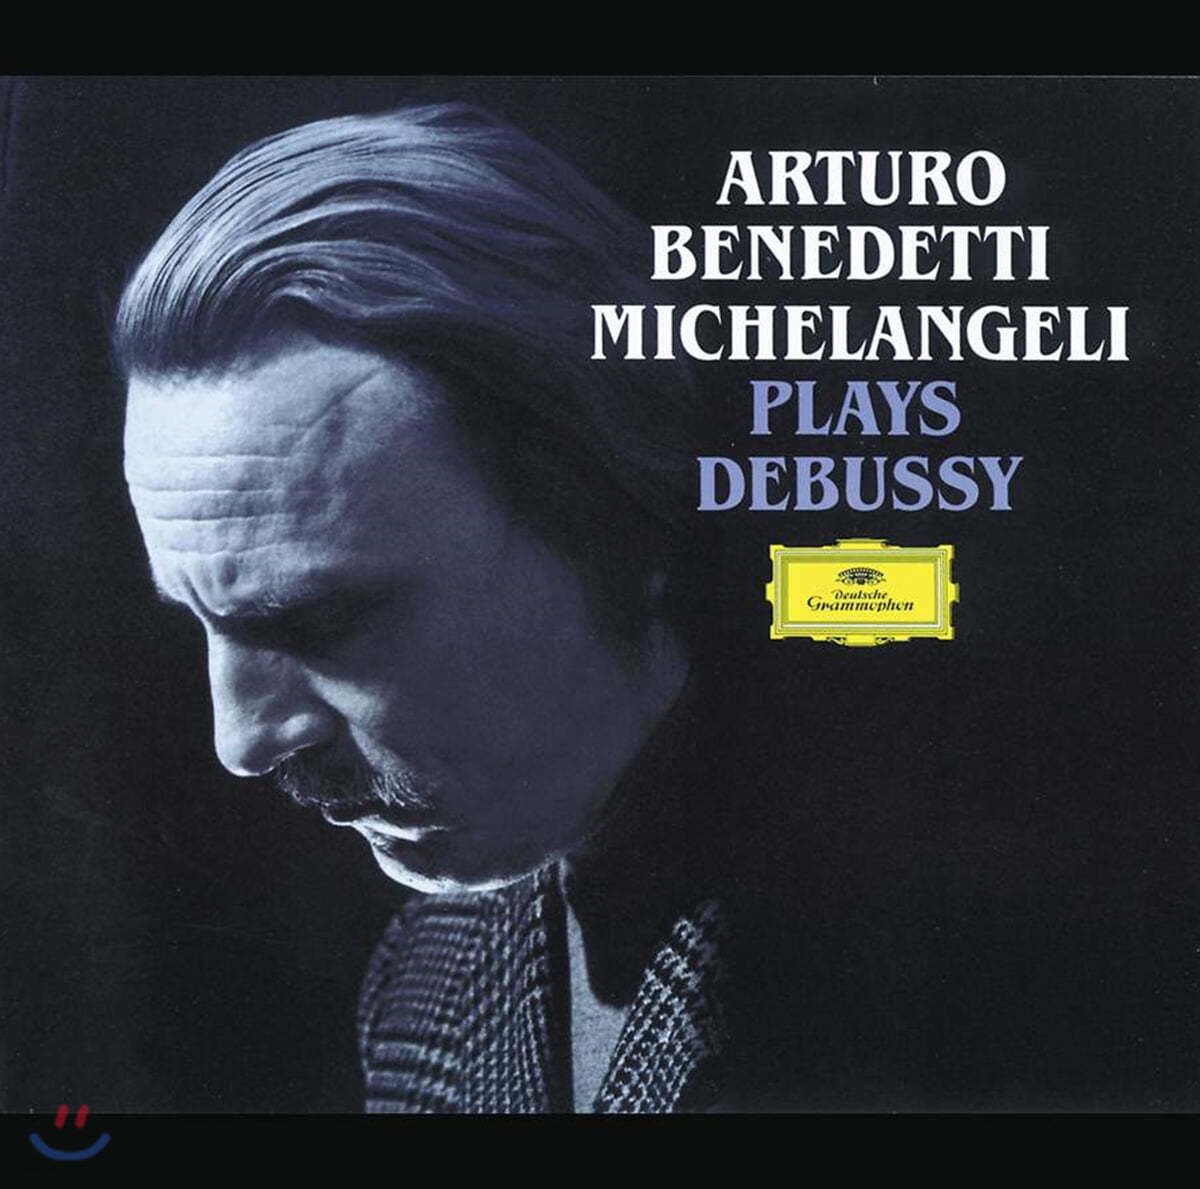 Arturo Benedetti Michelangeli 드뷔시: 전주곡, 영상 (Debussy: Preludes, Images)